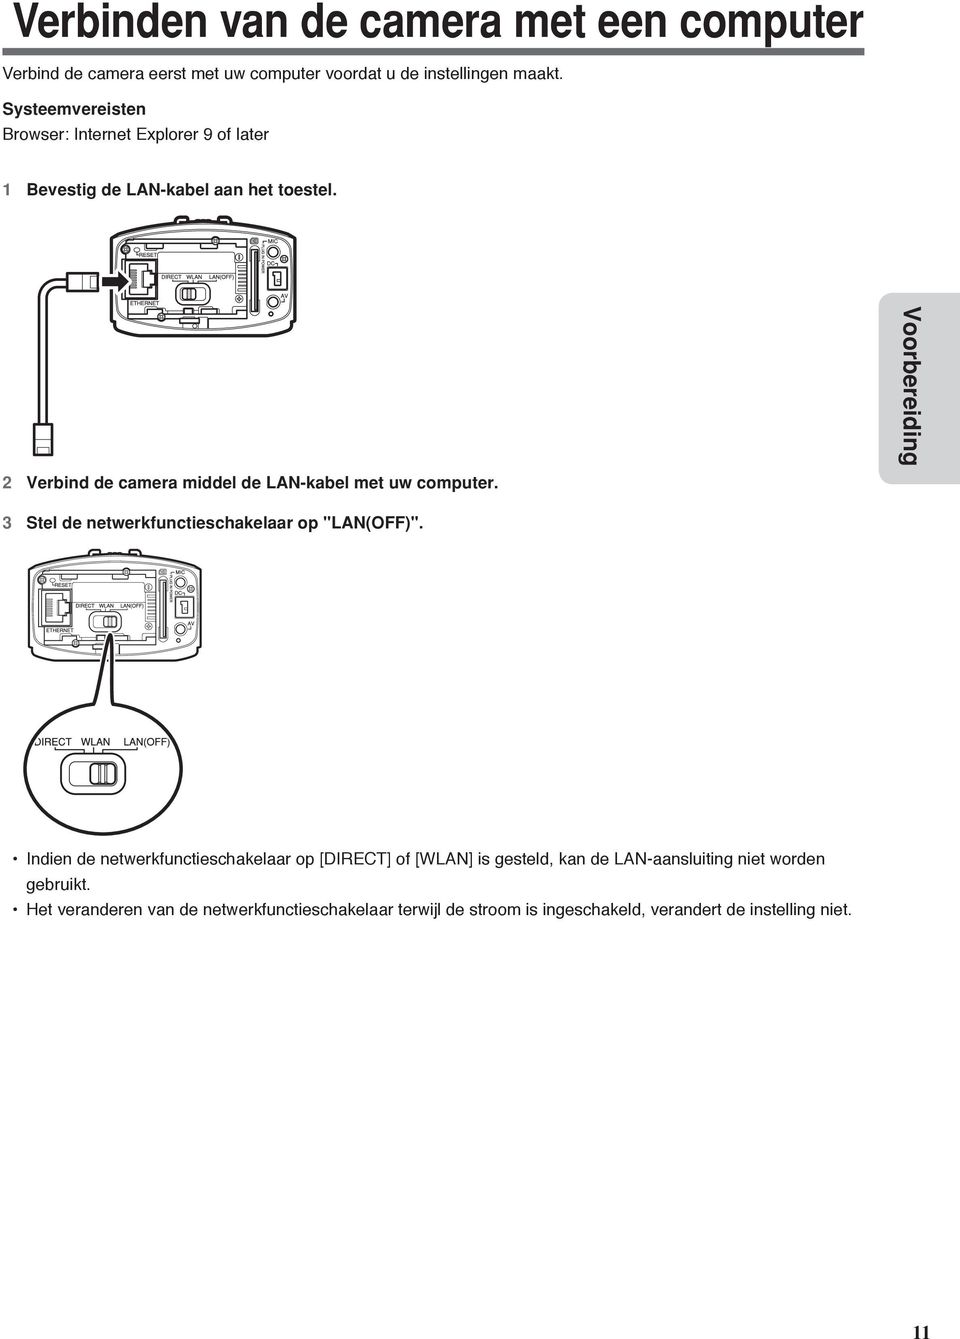 2 Verbind de camera middel de LAN-kabel met uw computer. Voorbereiding 3 Stel de netwerkfunctieschakelaar op "LAN(OFF)".